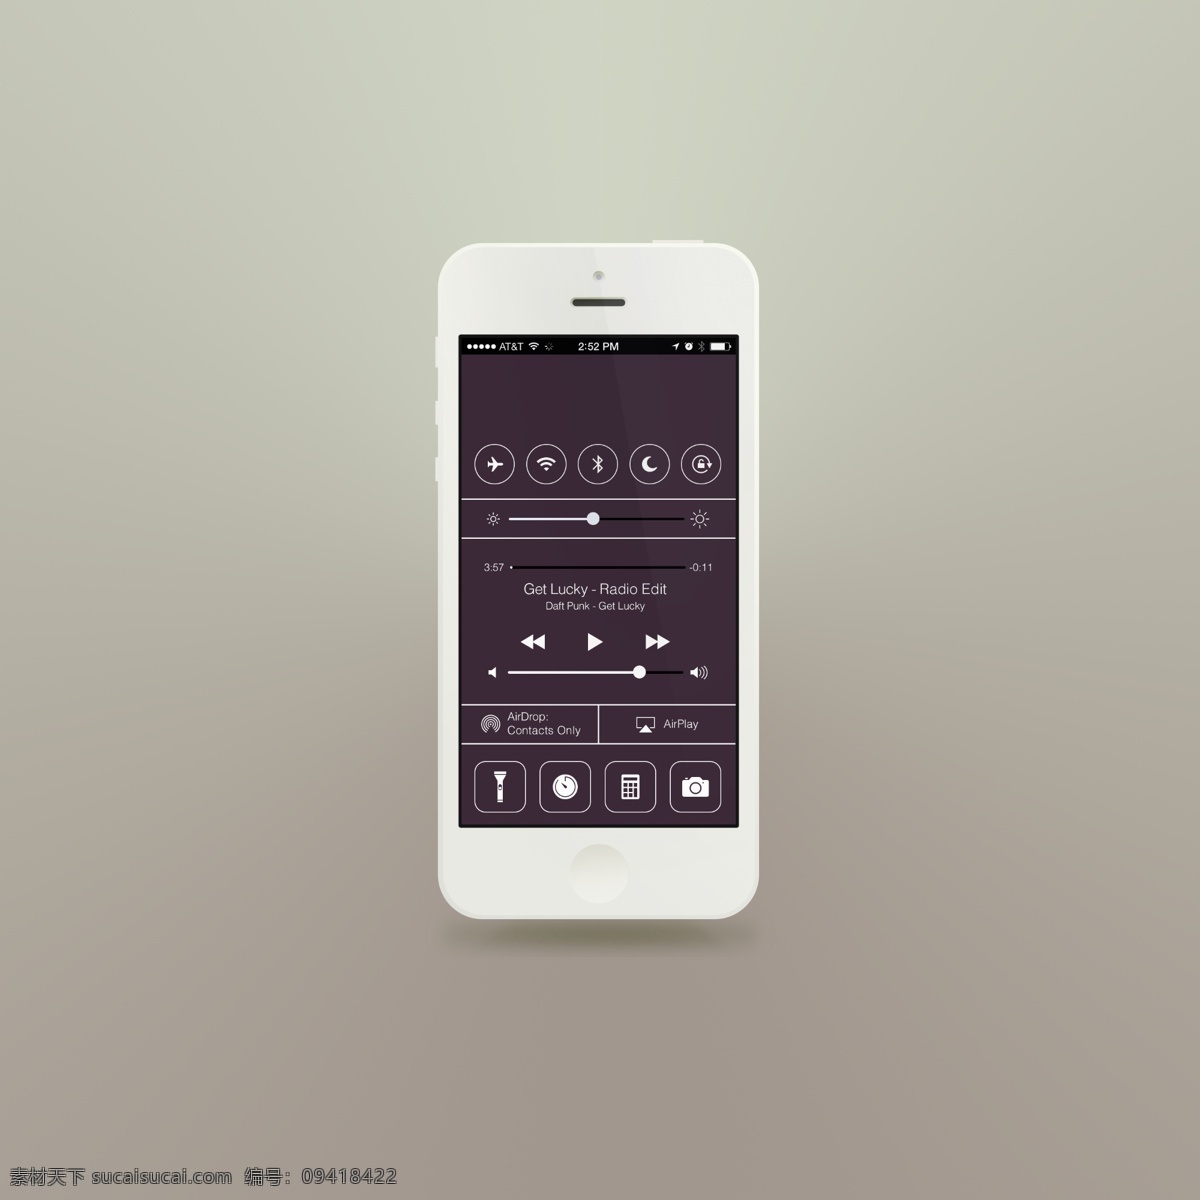 白色扁平化 iphone5s 白色 扁平化 ui 模版 设备 手机界面 移动界面设计 灰色